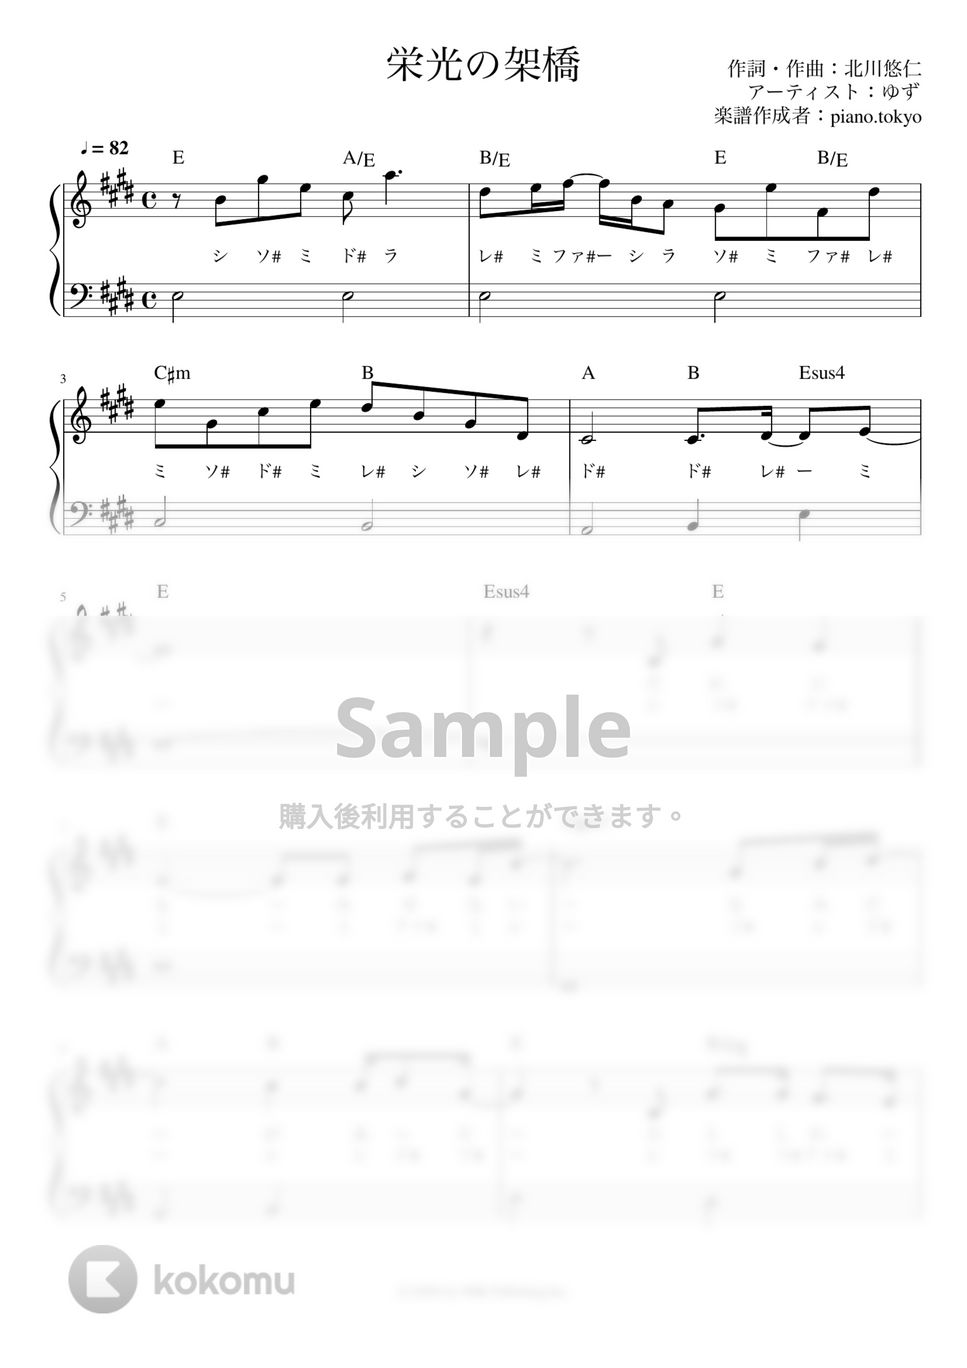 ゆず - 栄光の架橋 (かんたん / 歌詞付き / ドレミ付き / 初心者) by piano.tokyo